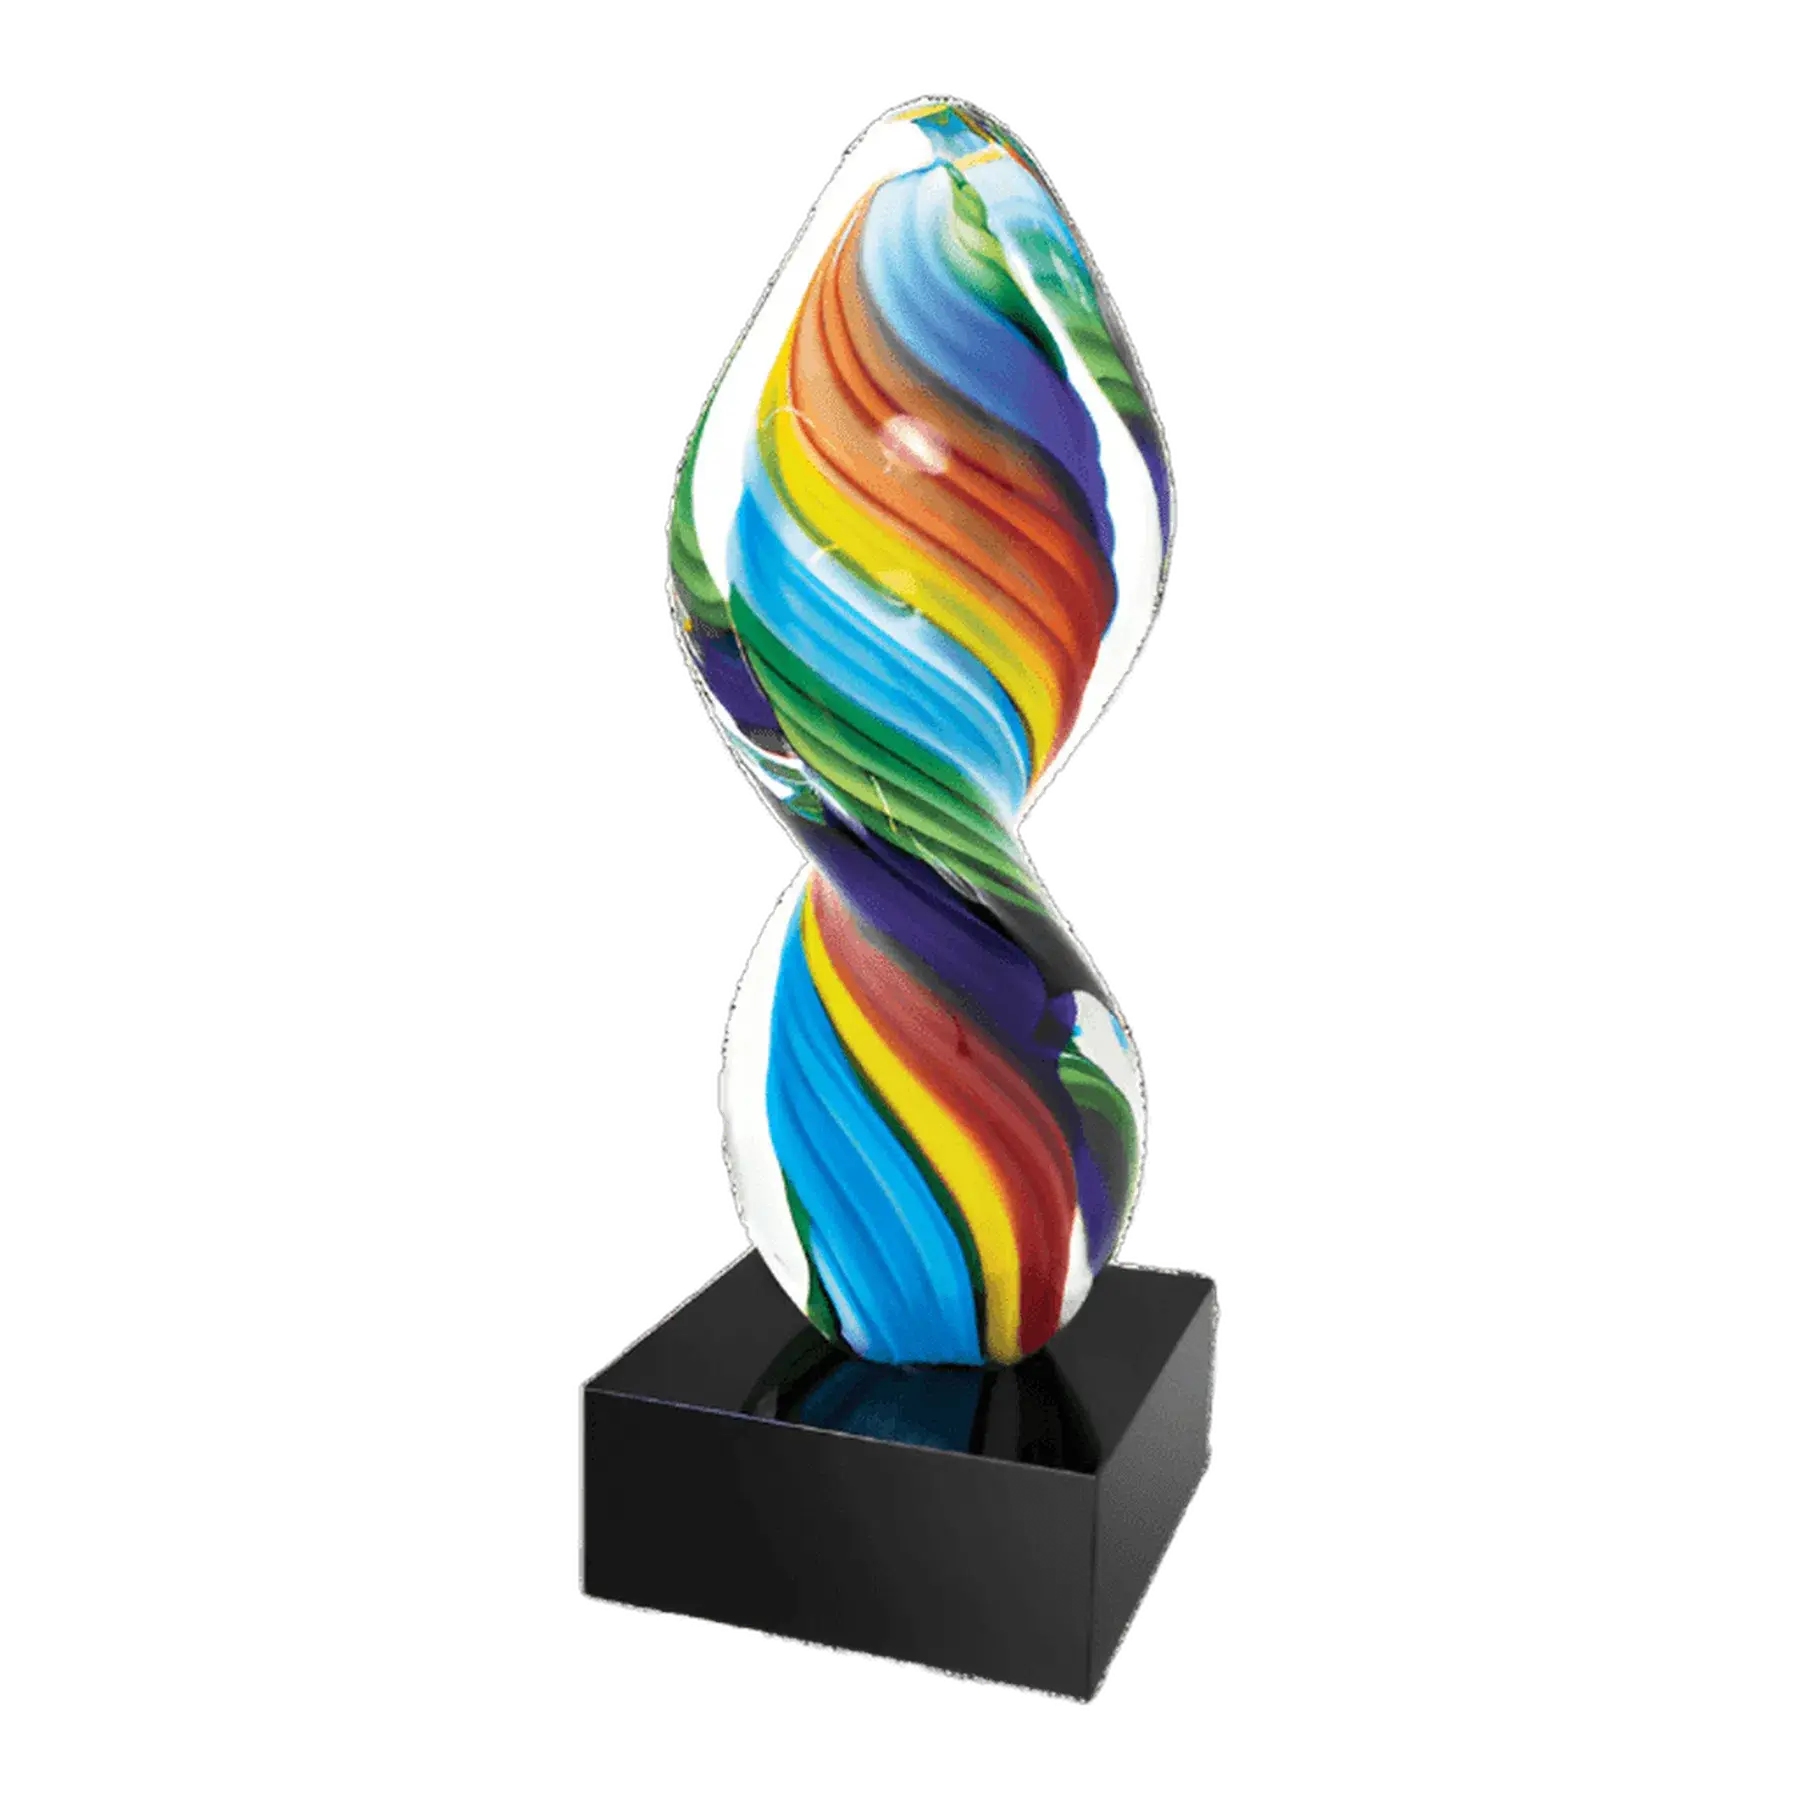 14" Multi-Color Twist Art Glass Award Sculpture